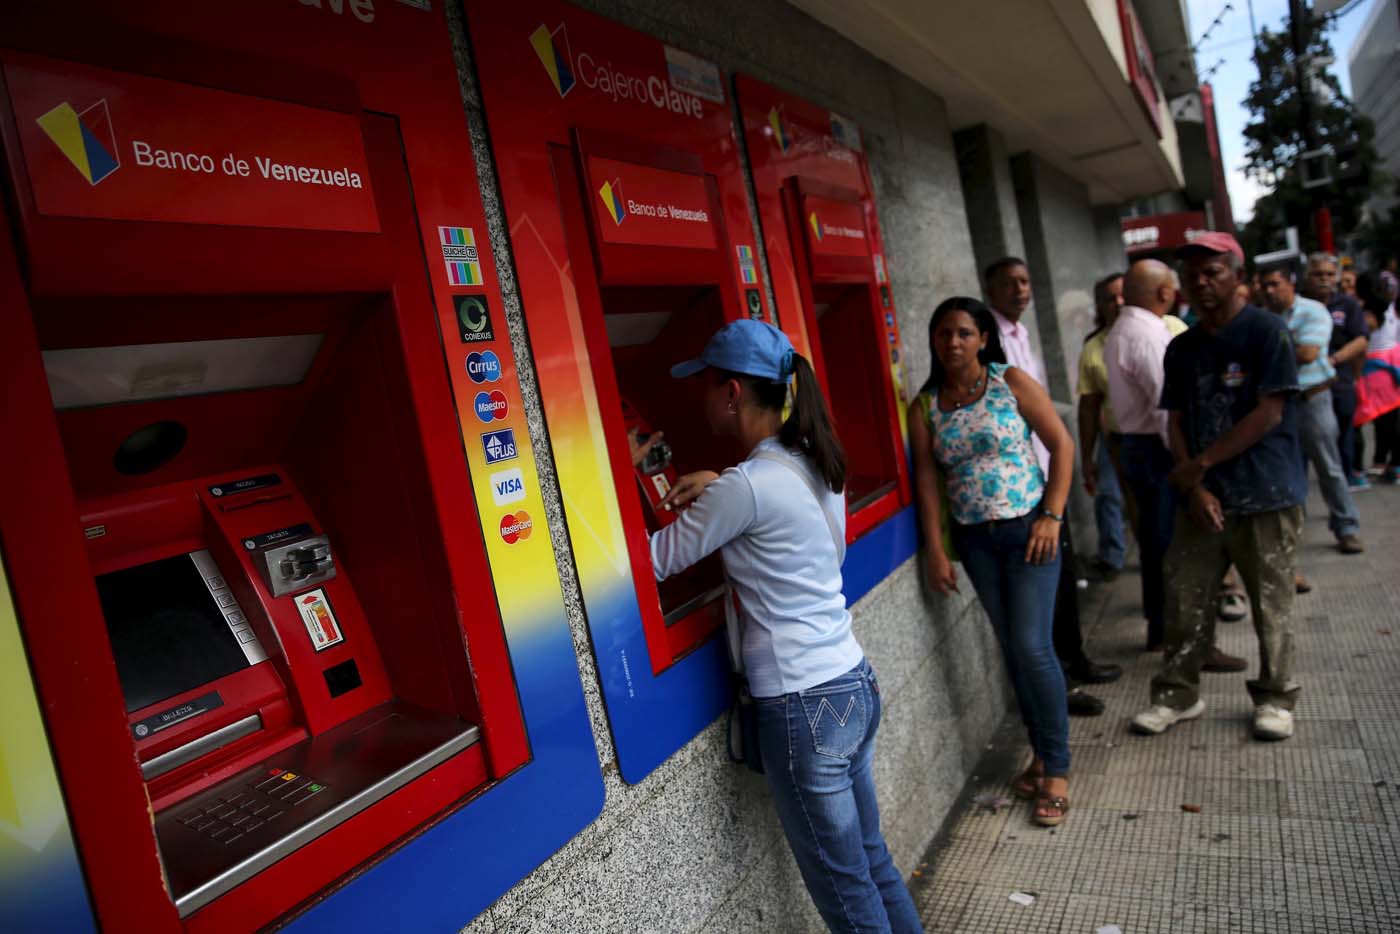 Los billetes del nuevo cono siguen sin llegar a los bancos del estado Vargas